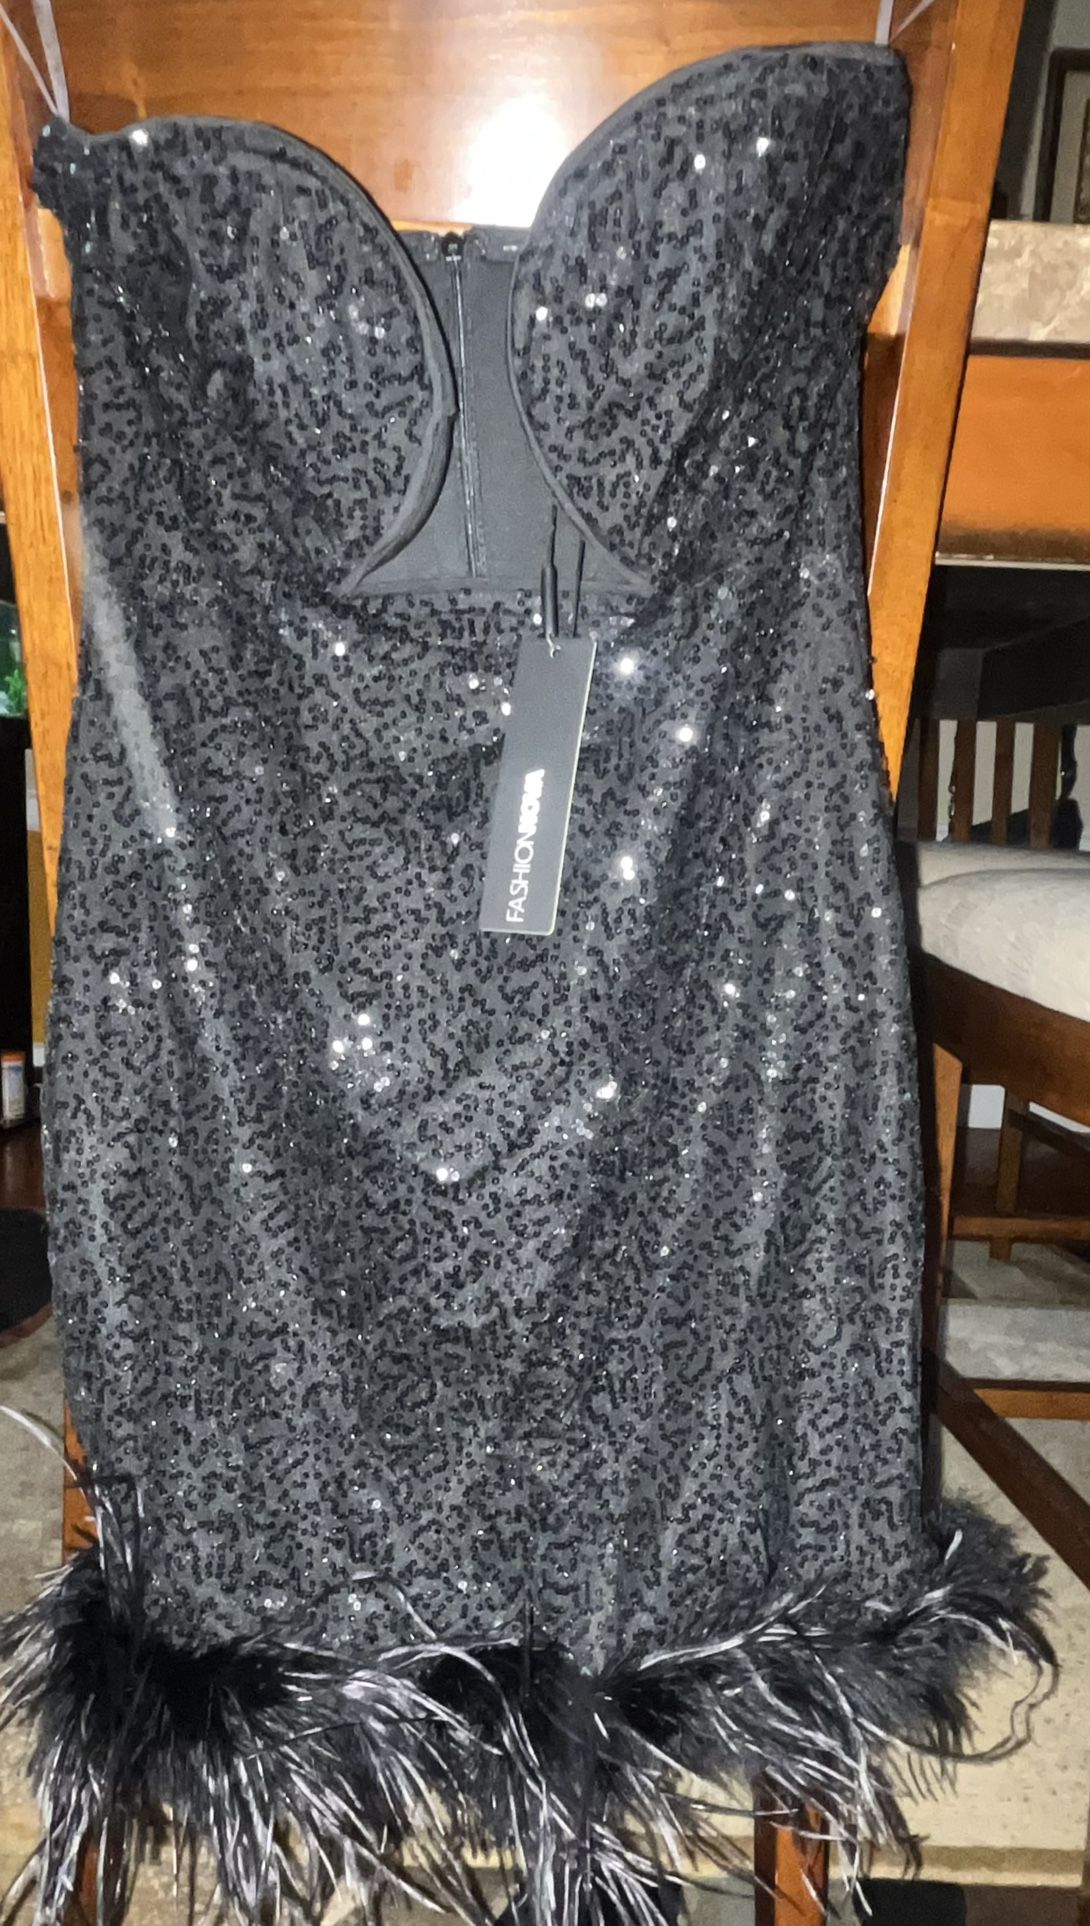 New Fashionnova Sequin Mini Dress Size Medium